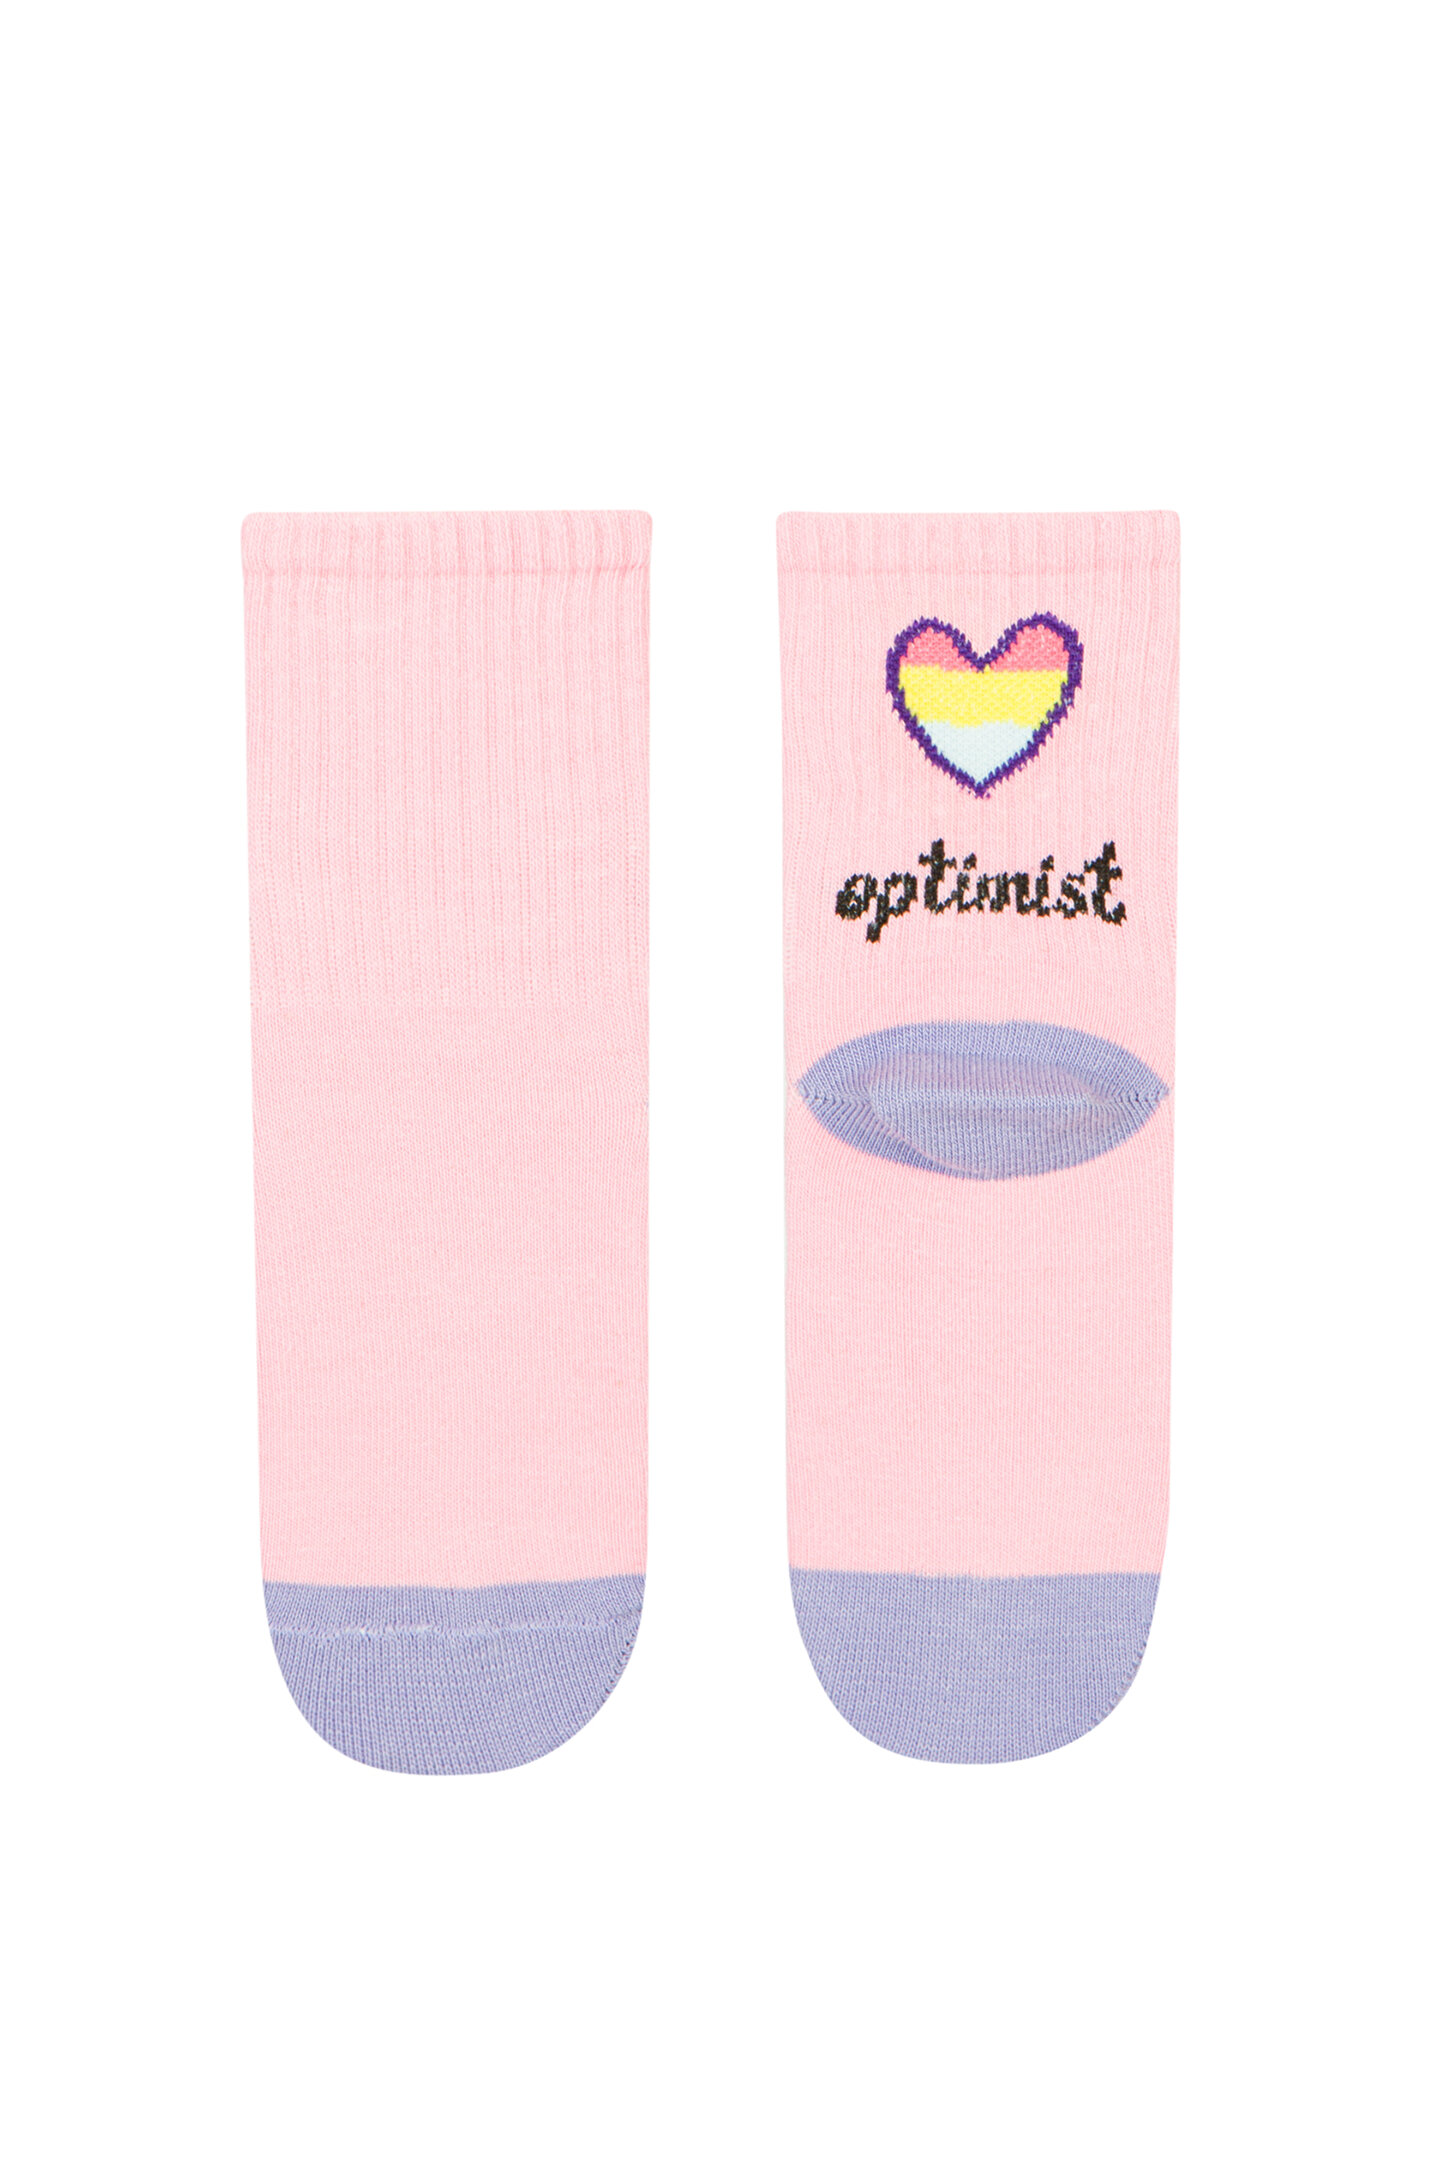 G Optimist Socks - 1